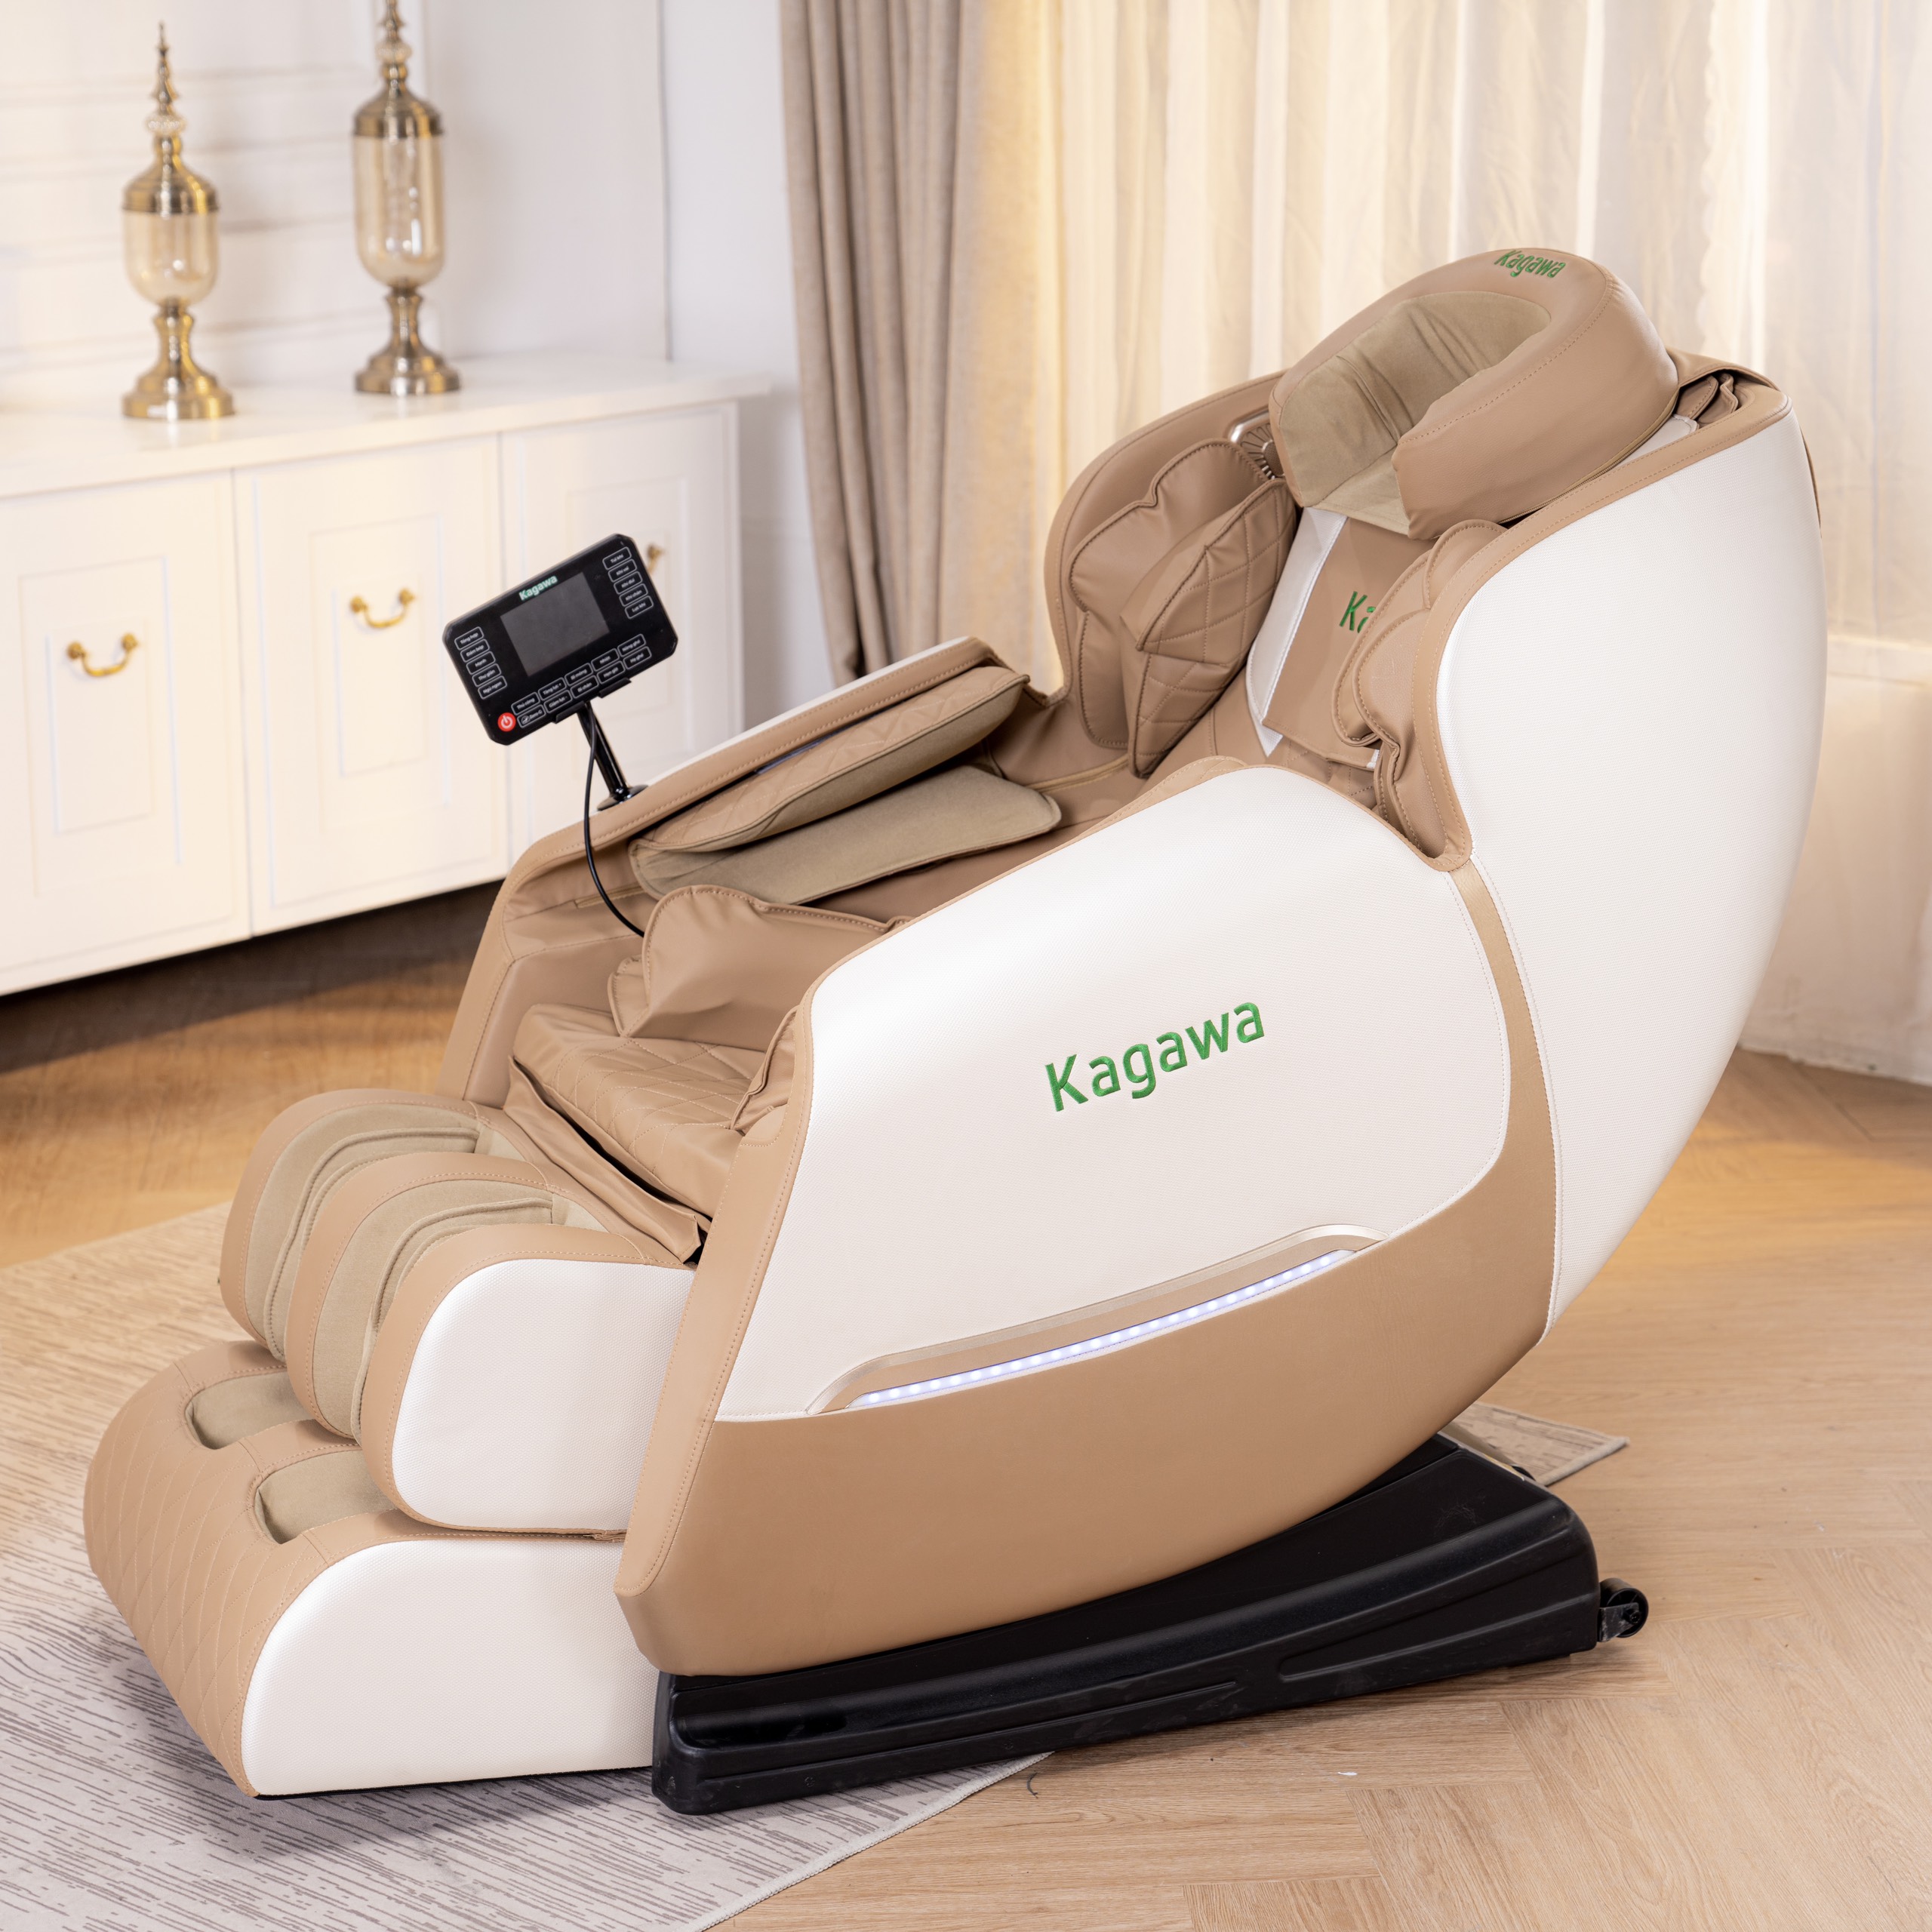 Ghế massage trị liệu toàn thân KAGAWA K85 công nghệ điểu khiển bằng giọng nói con lăn 3D cao cấp